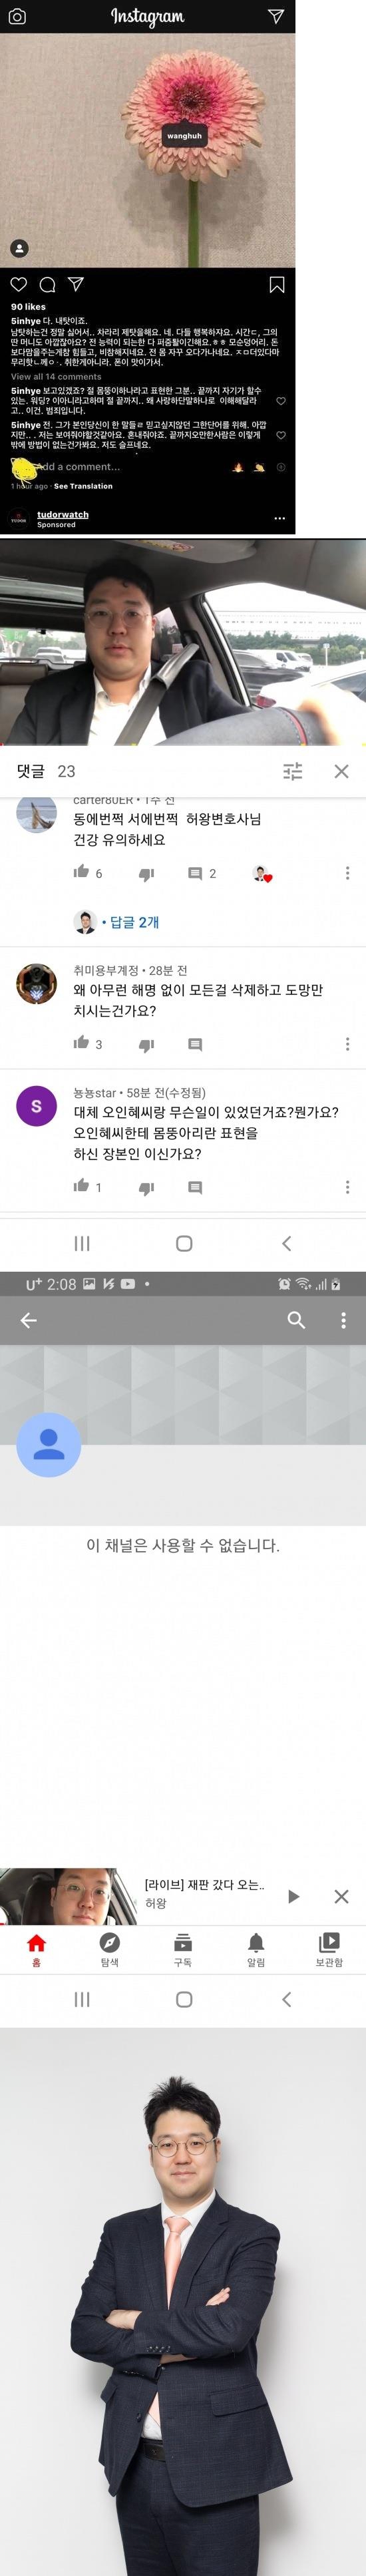 고 오인혜가 인스타 저격한 인물.